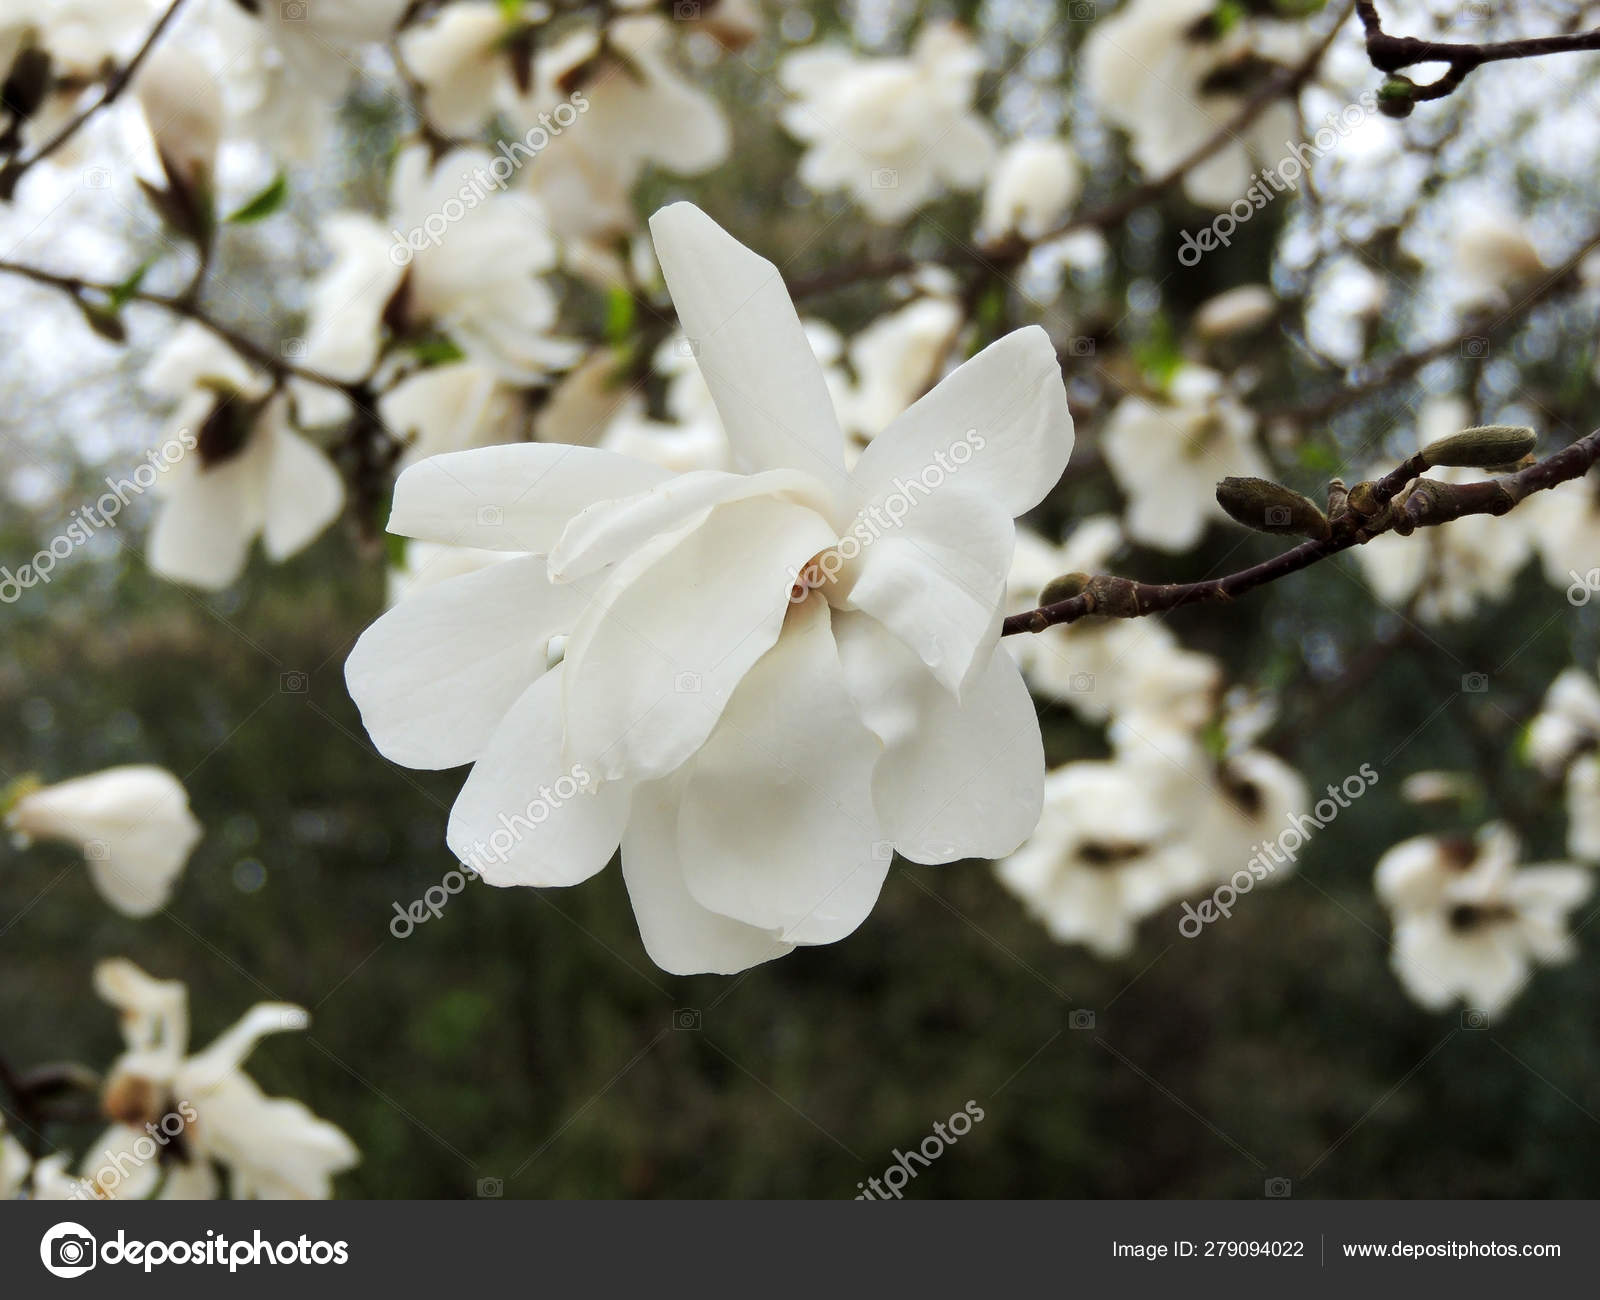 Magnolia loebneri